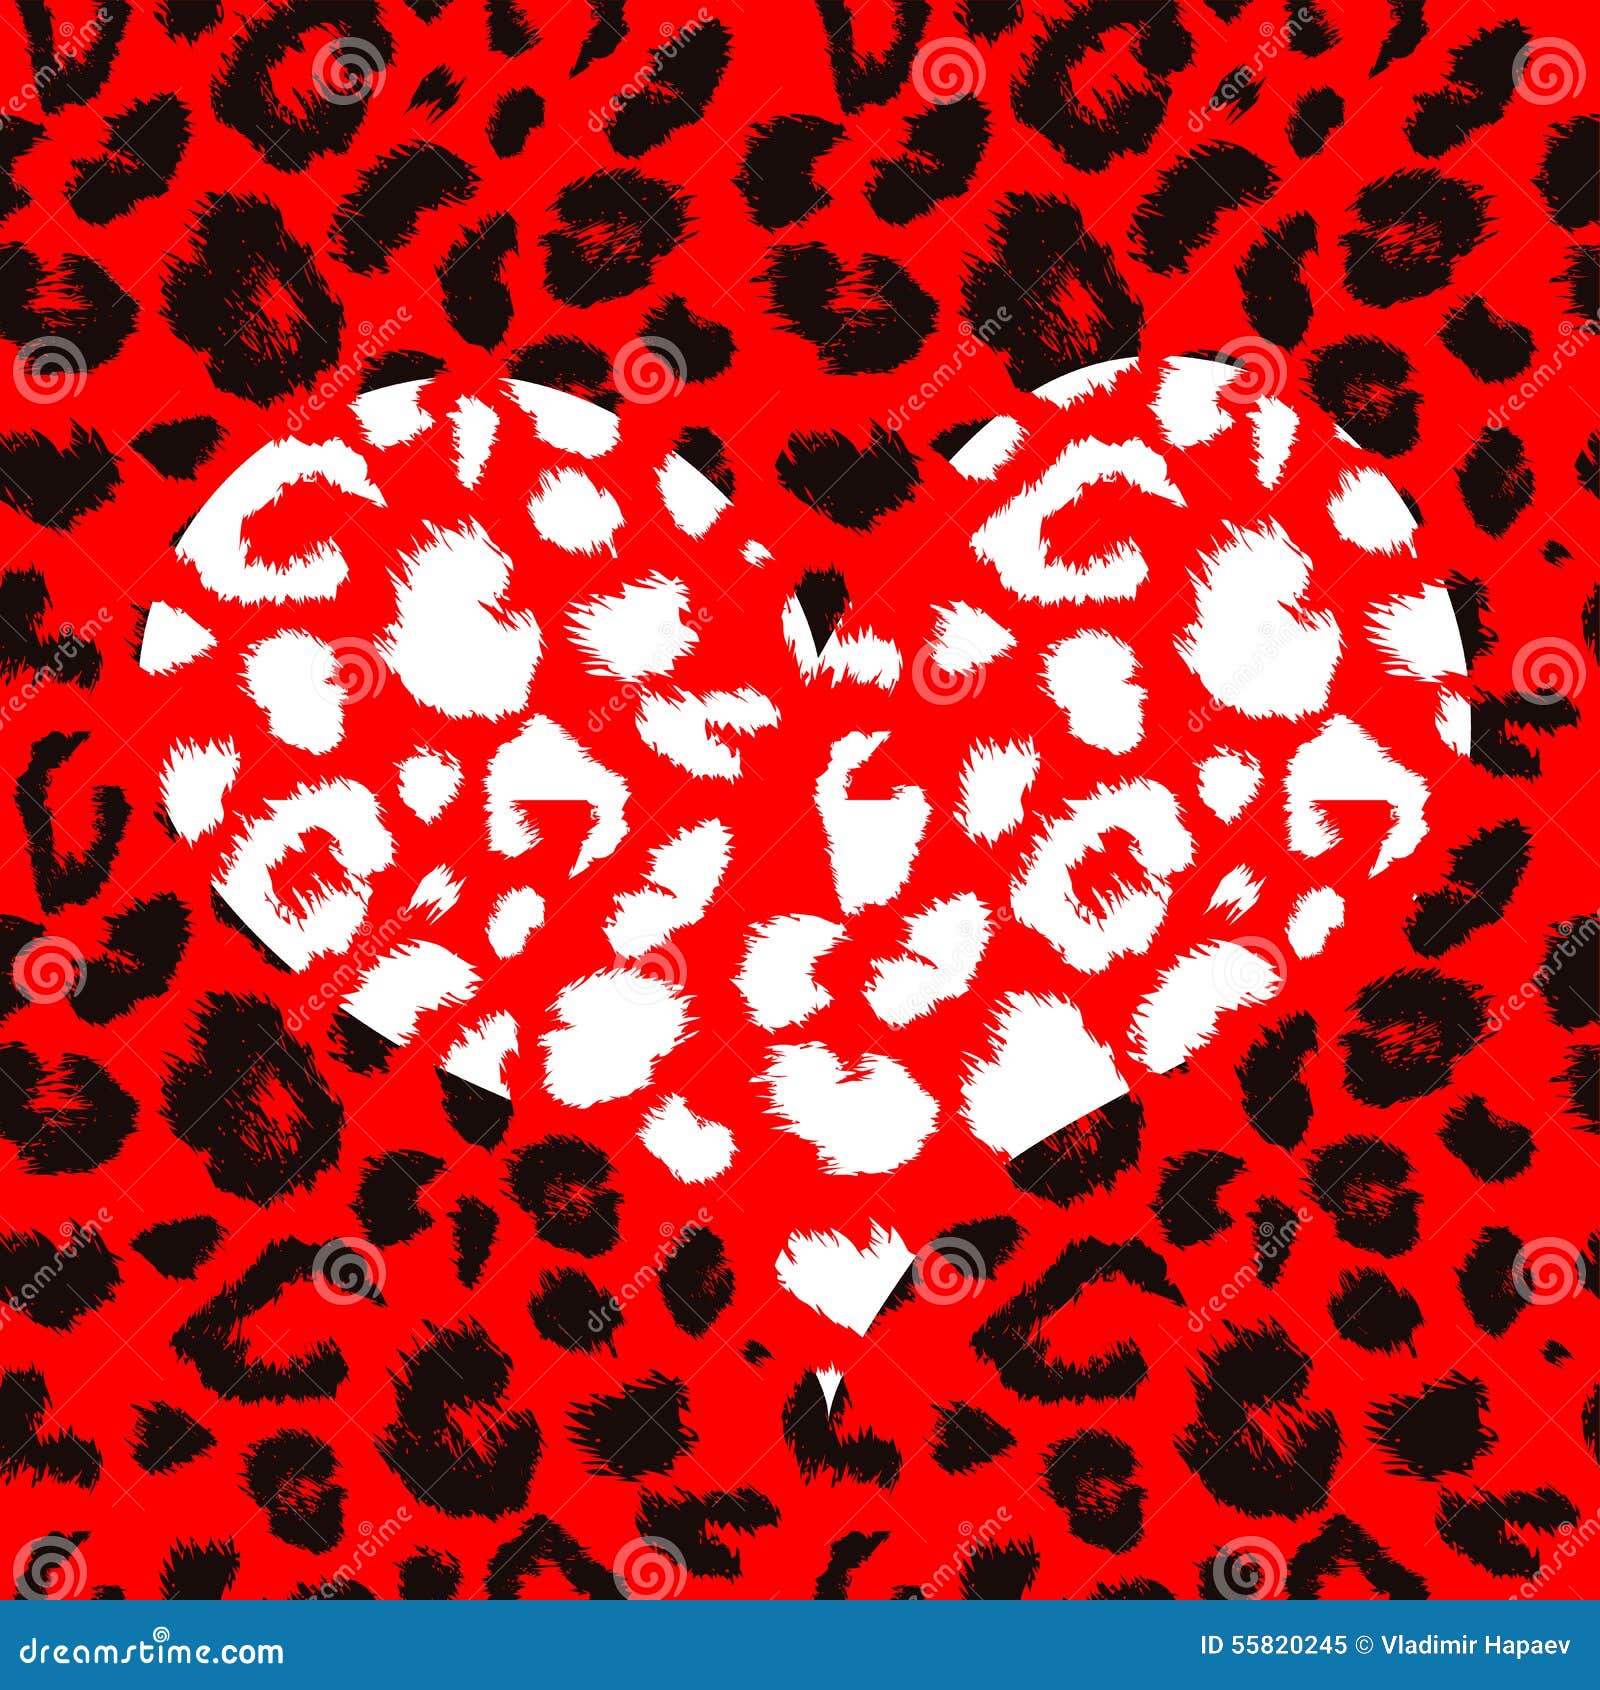 leopard coeur heart